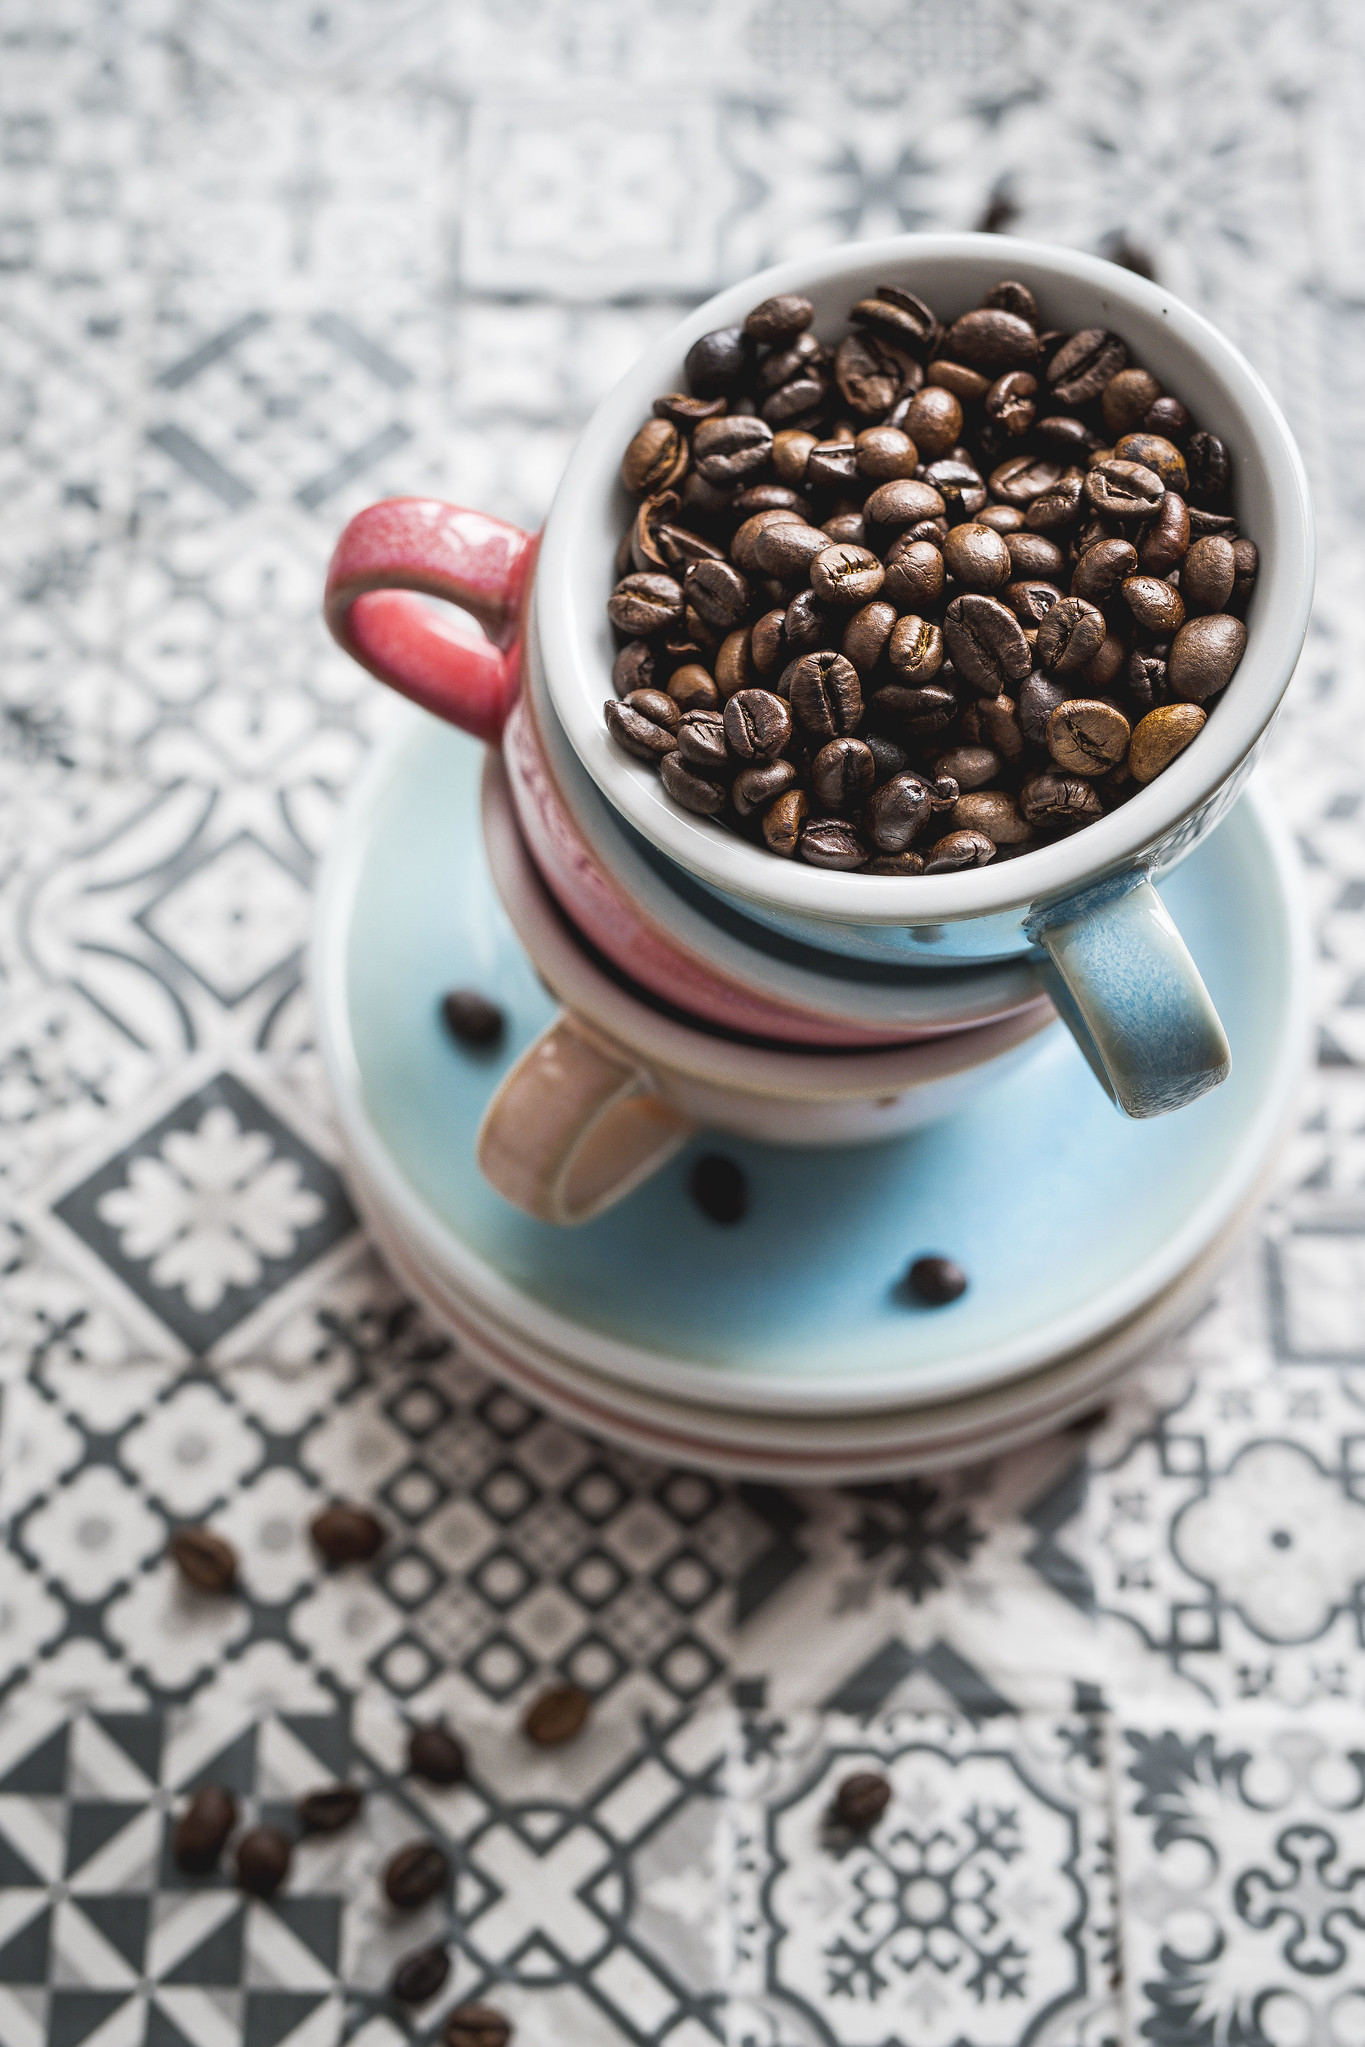 เมล็ดกาแฟในถ้วย  ปริมาณคาเฟอีนต่อวัน